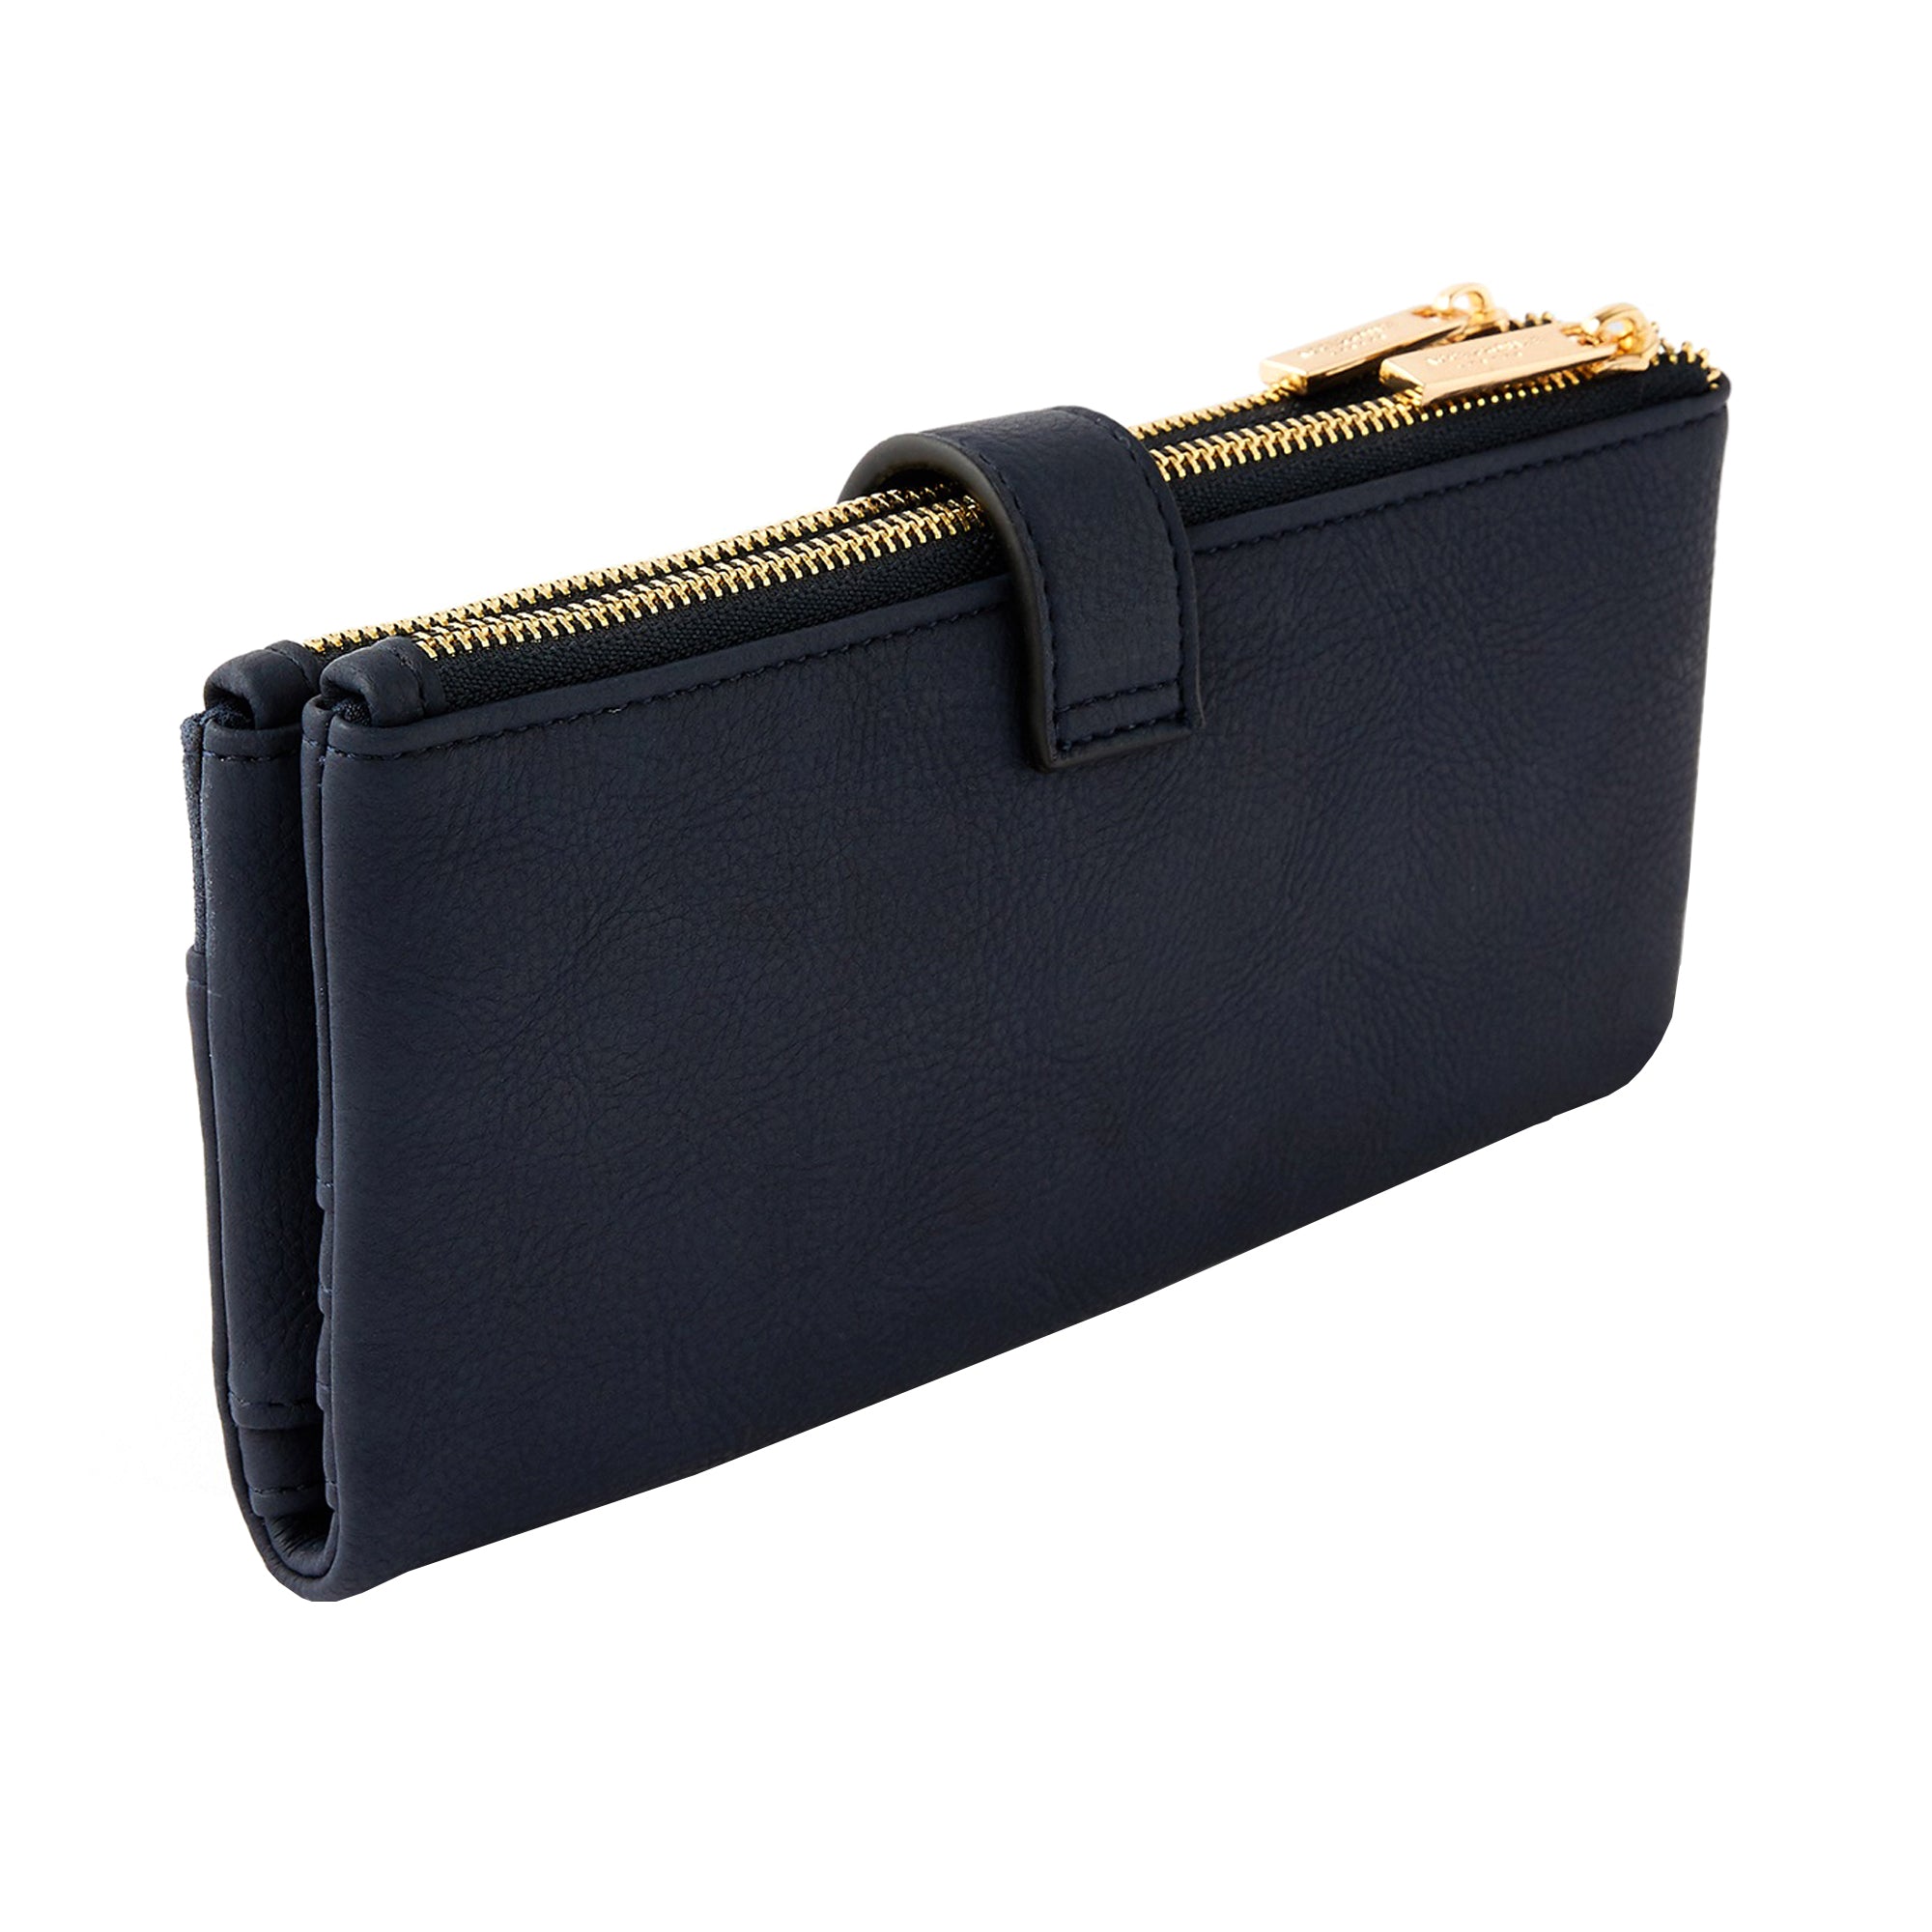 Accessorize London women's Blue Freya Push Lock Wallet purse